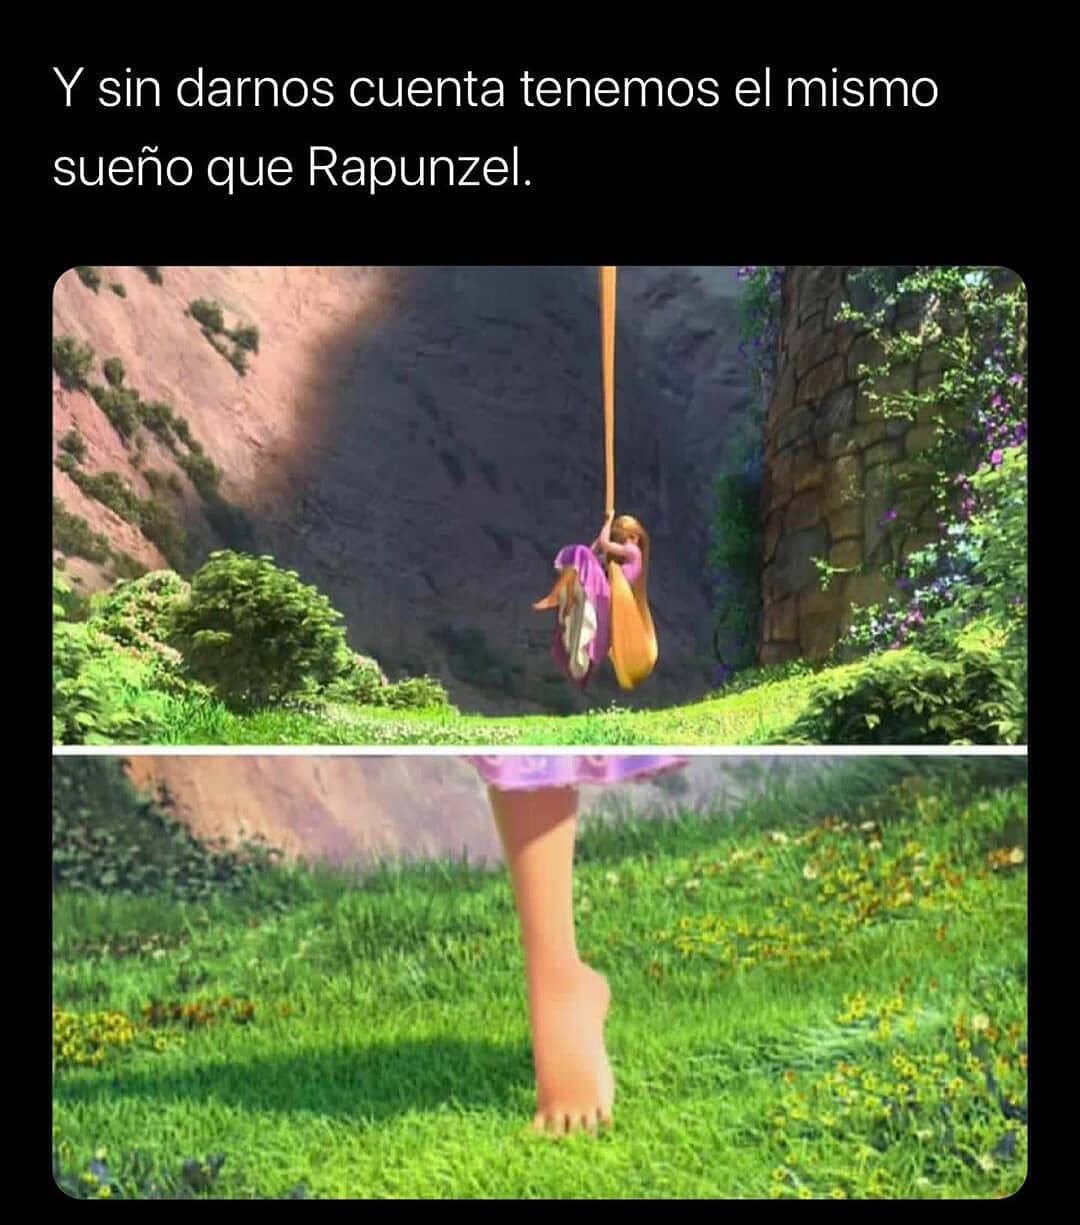 Y sin darnos cuenta tenemos el mismo sueño que Rapunzel.